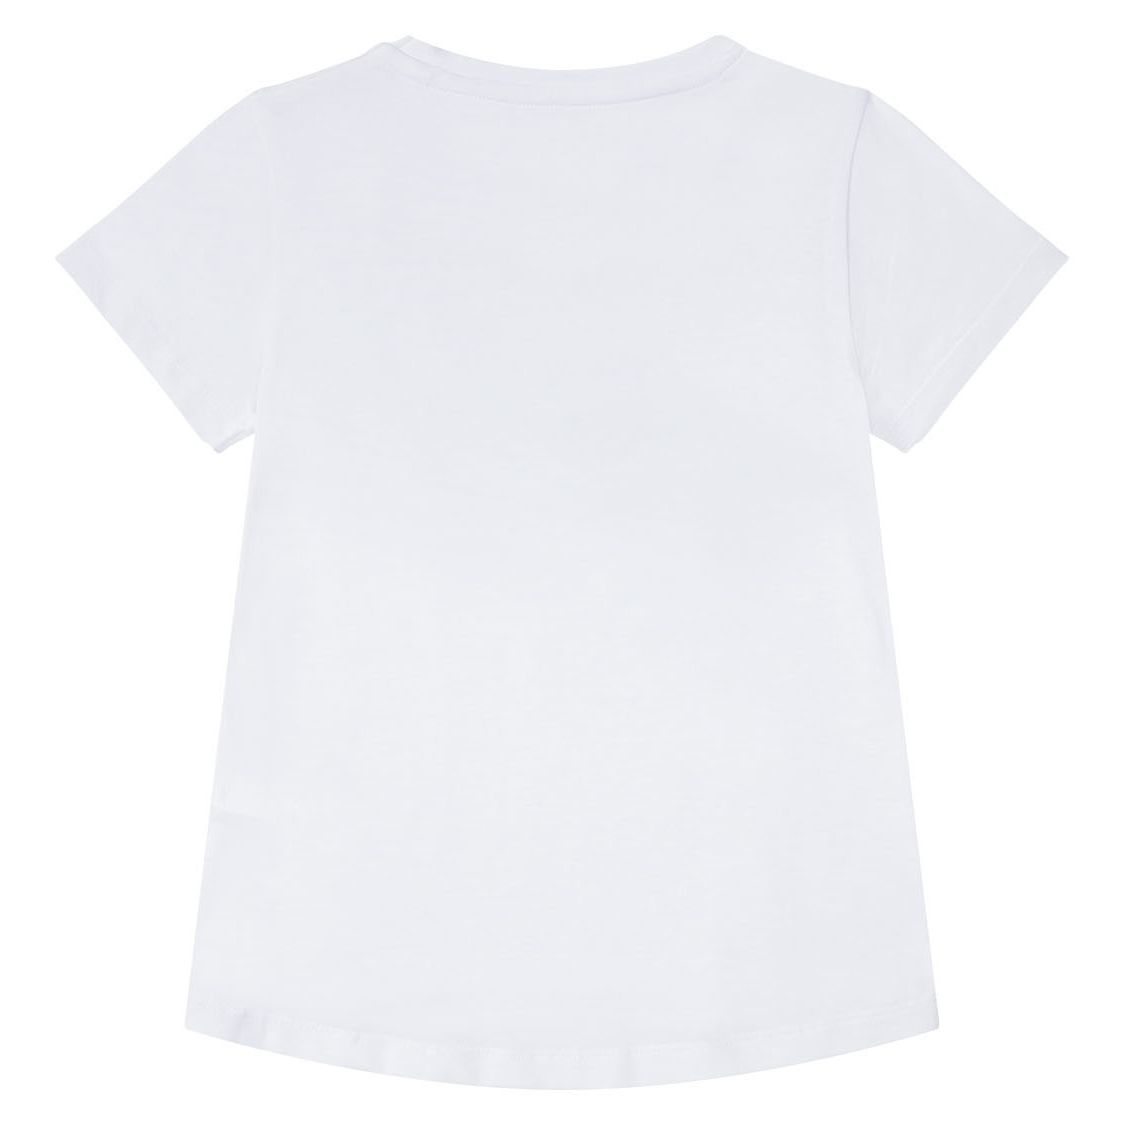 تی شرت آستین کوتاه دخترانه پیپرتس مدل Hello 8983 -  - 2